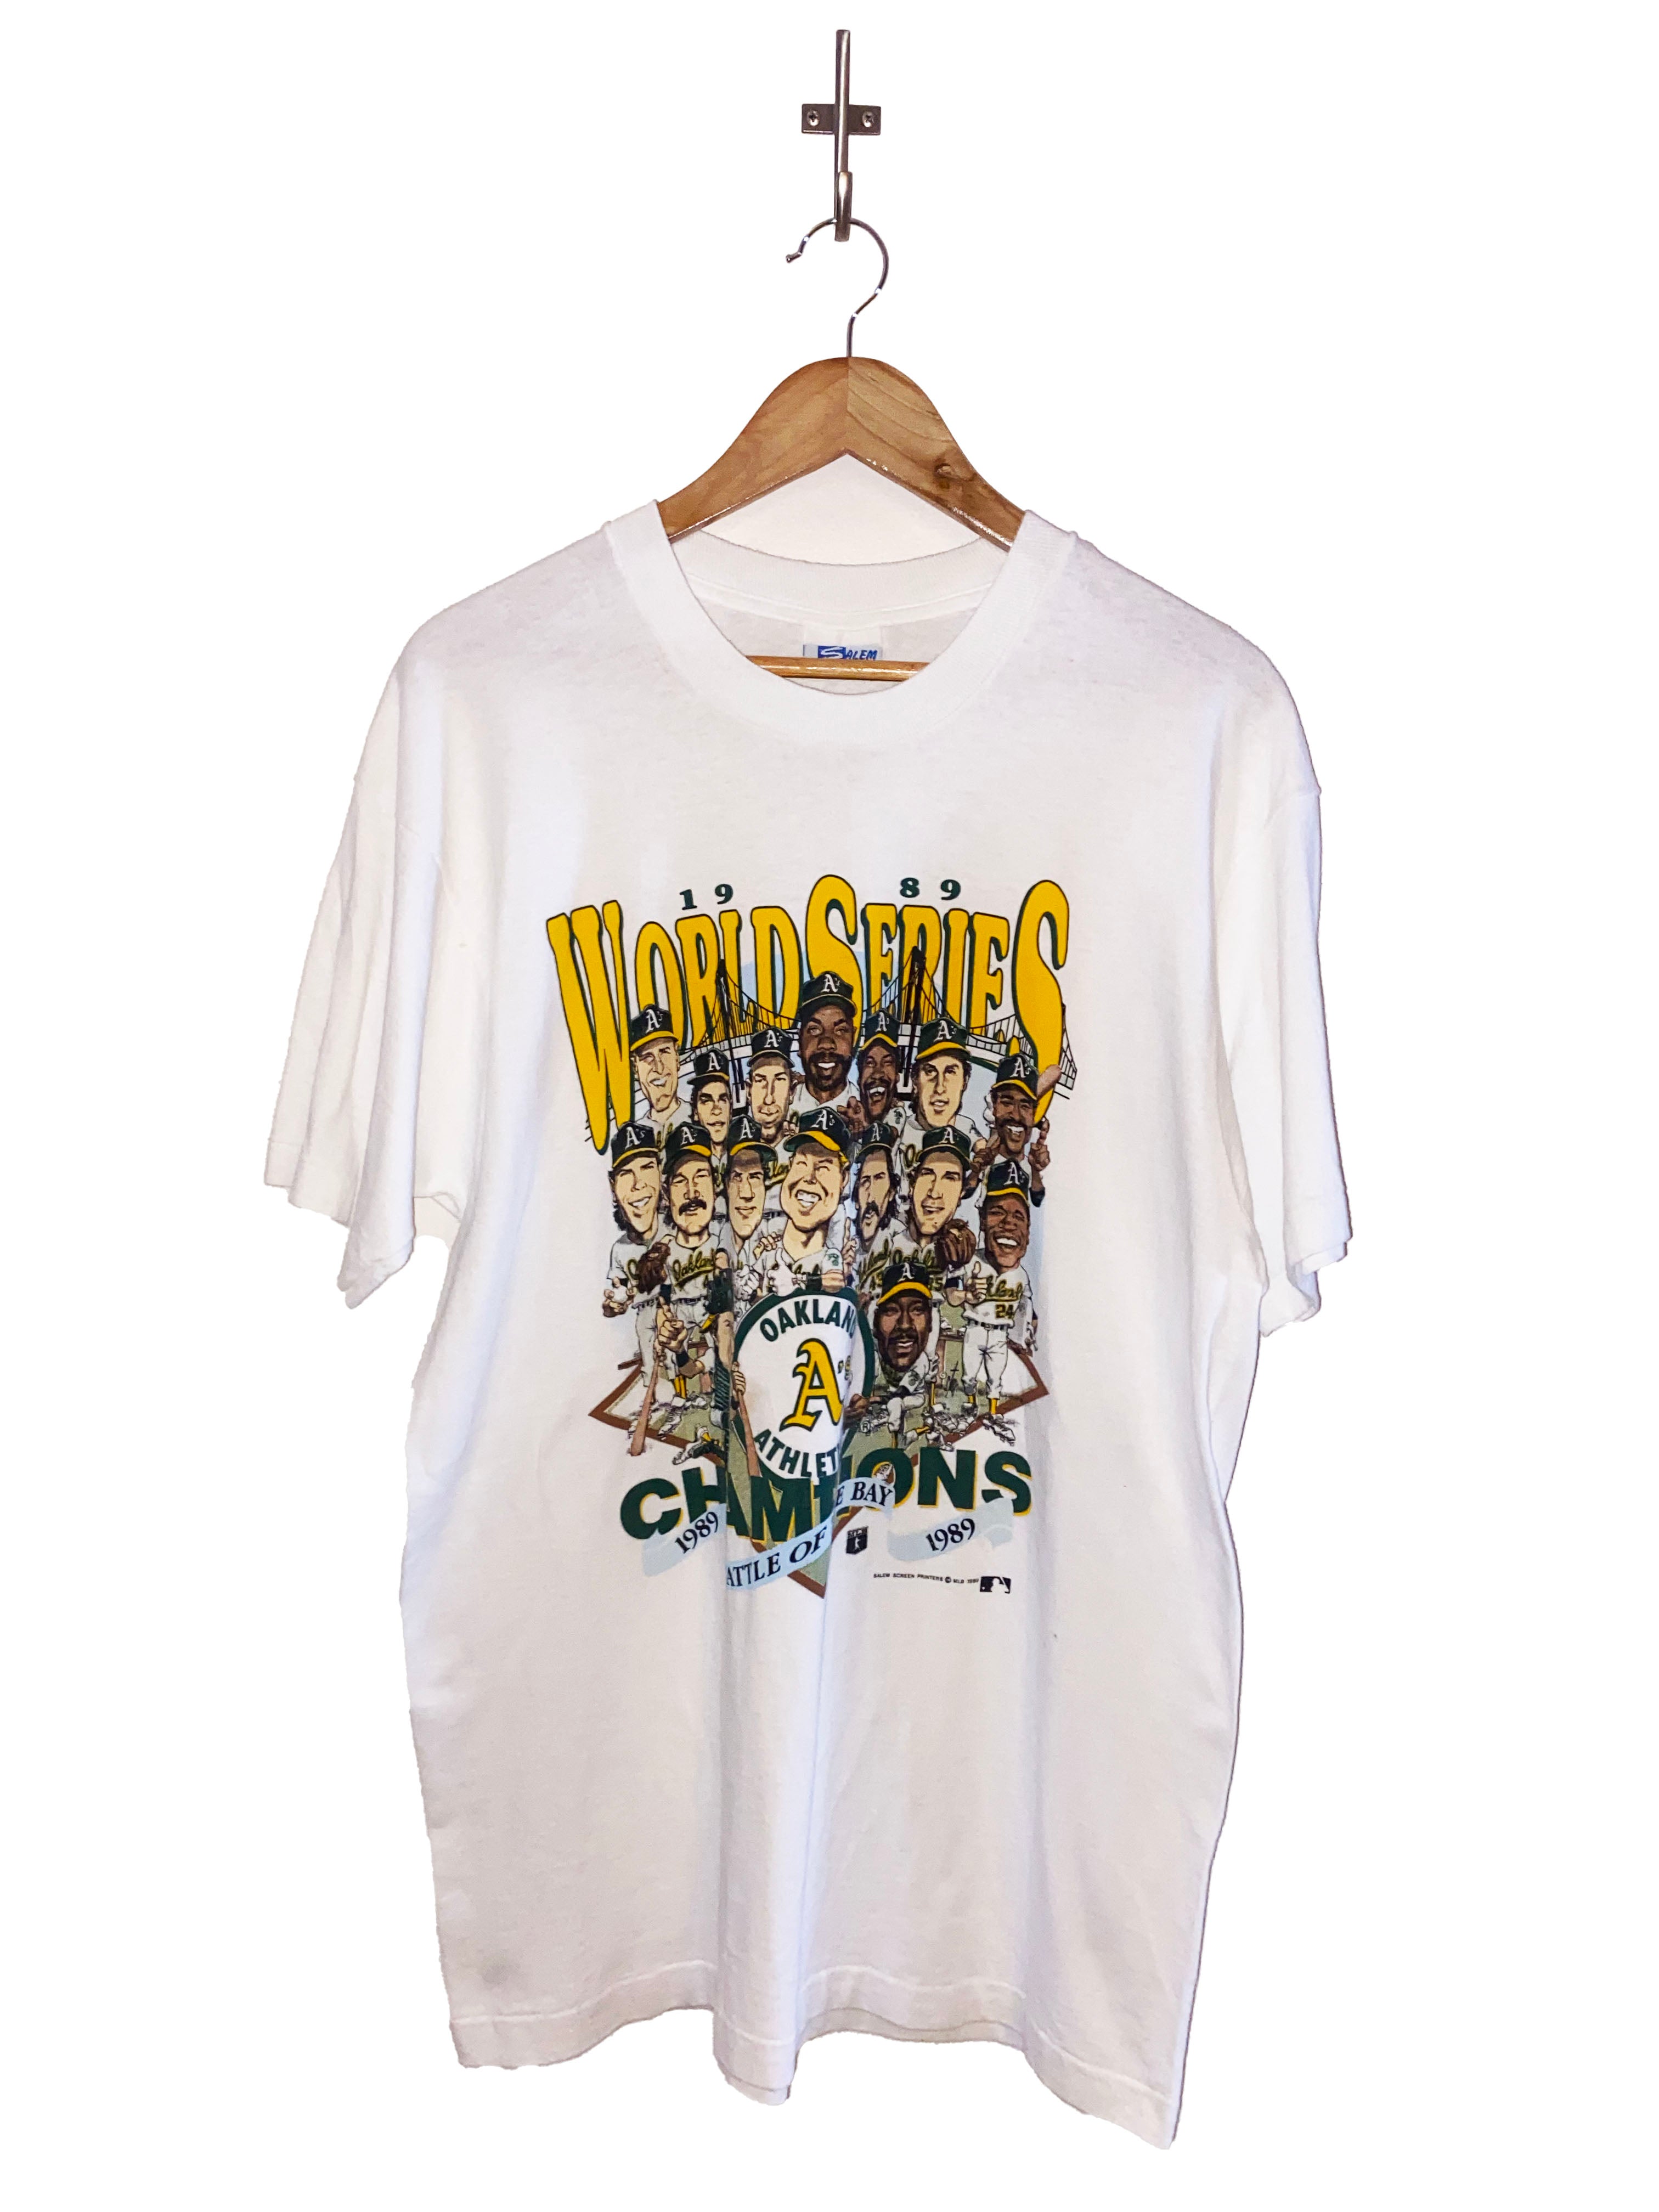 OAKLAND A's Shirt 1991 Vintage/ ATHLETICS Triple Threat